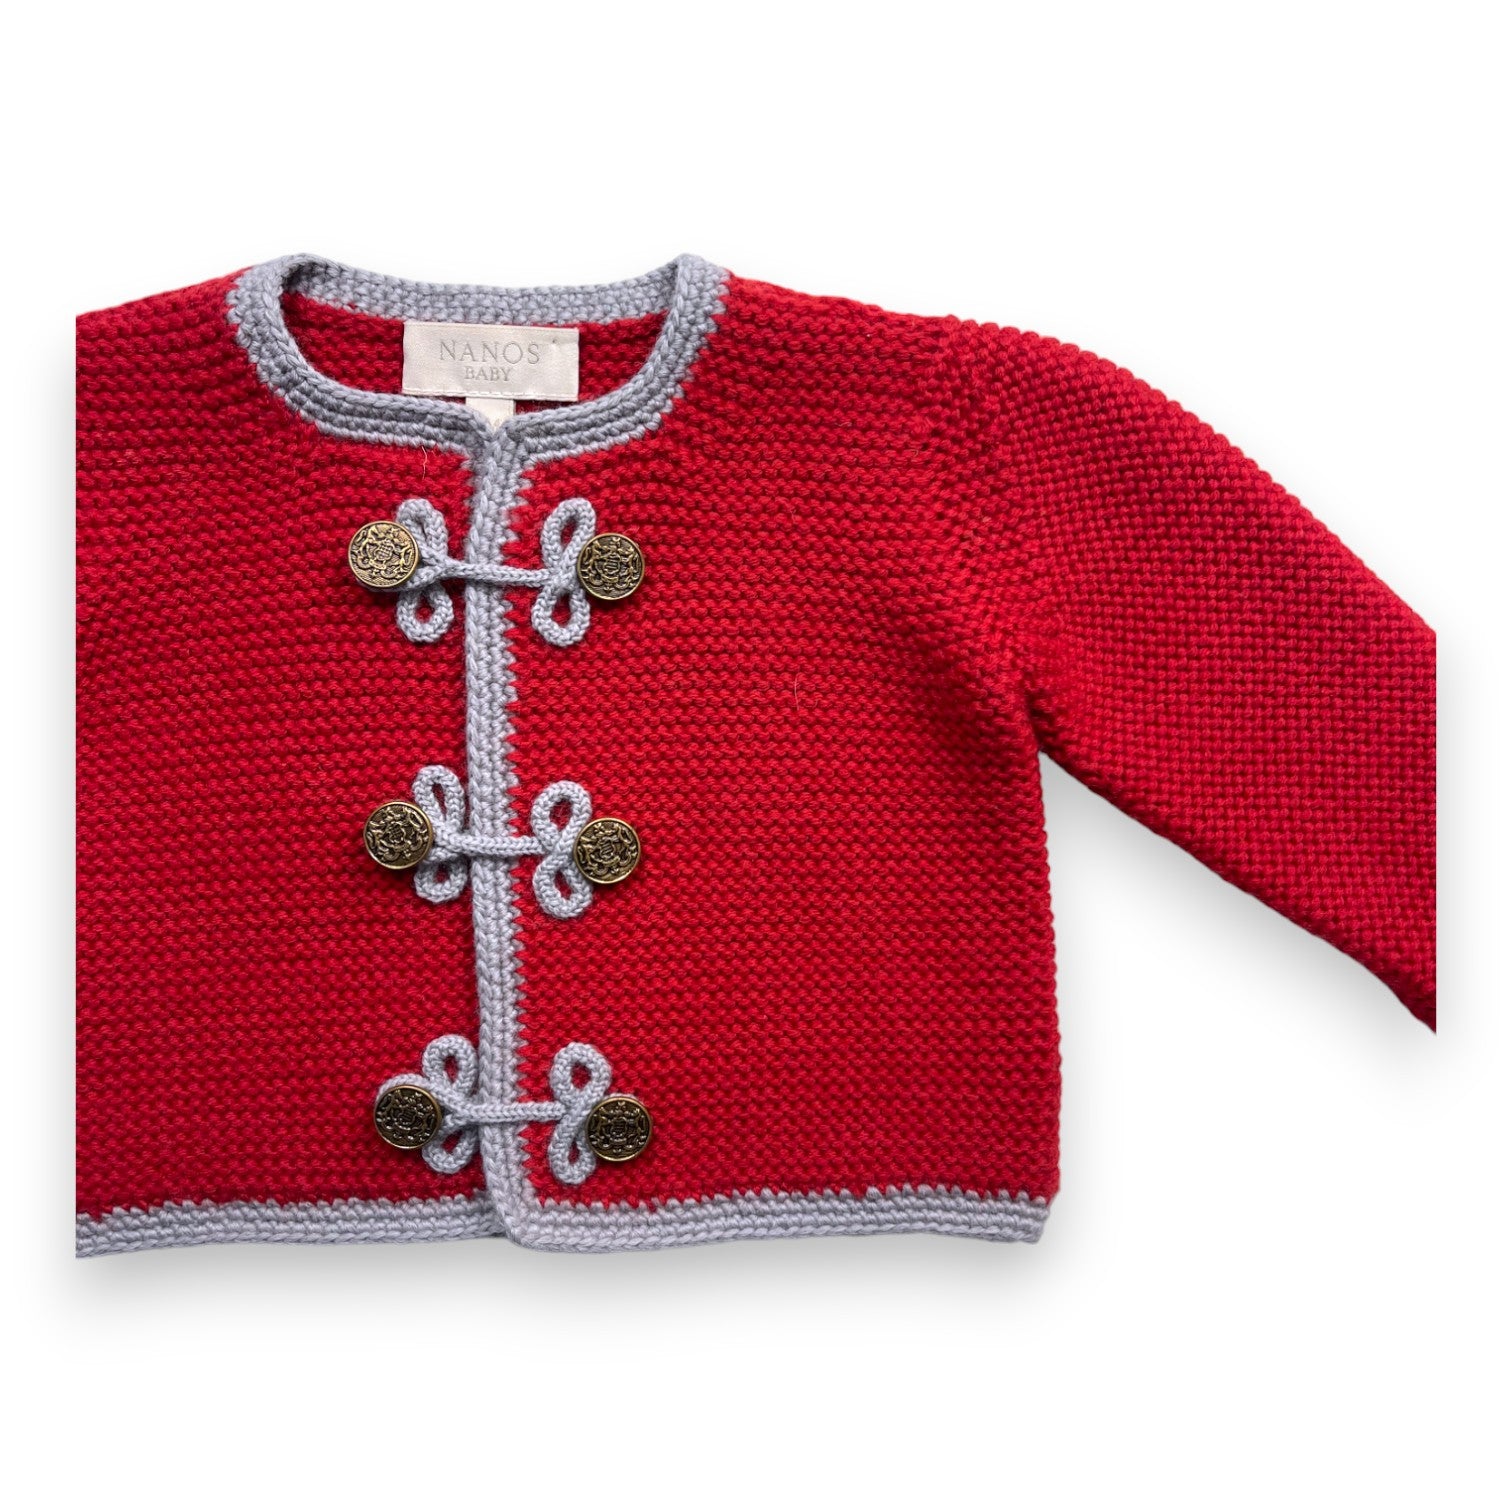 NANOS BABY - Cardigan rouge en laine - 9 mois